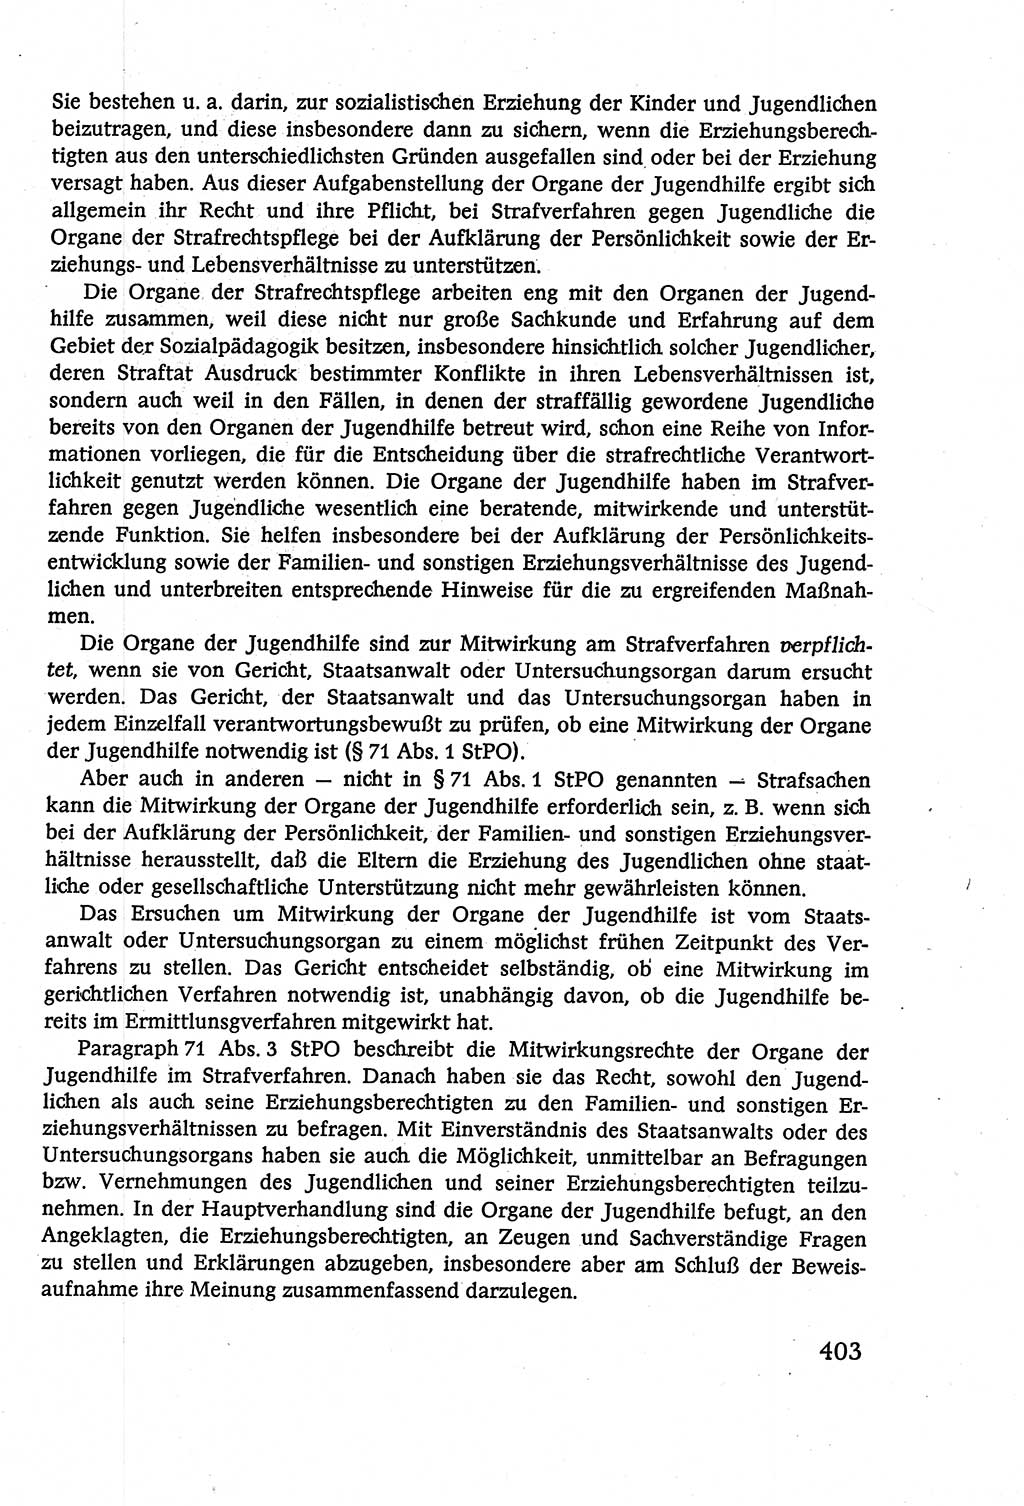 Strafverfahrensrecht [Deutsche Demokratische Republik (DDR)], Lehrbuch 1977, Seite 403 (Strafverf.-R. DDR Lb. 1977, S. 403)